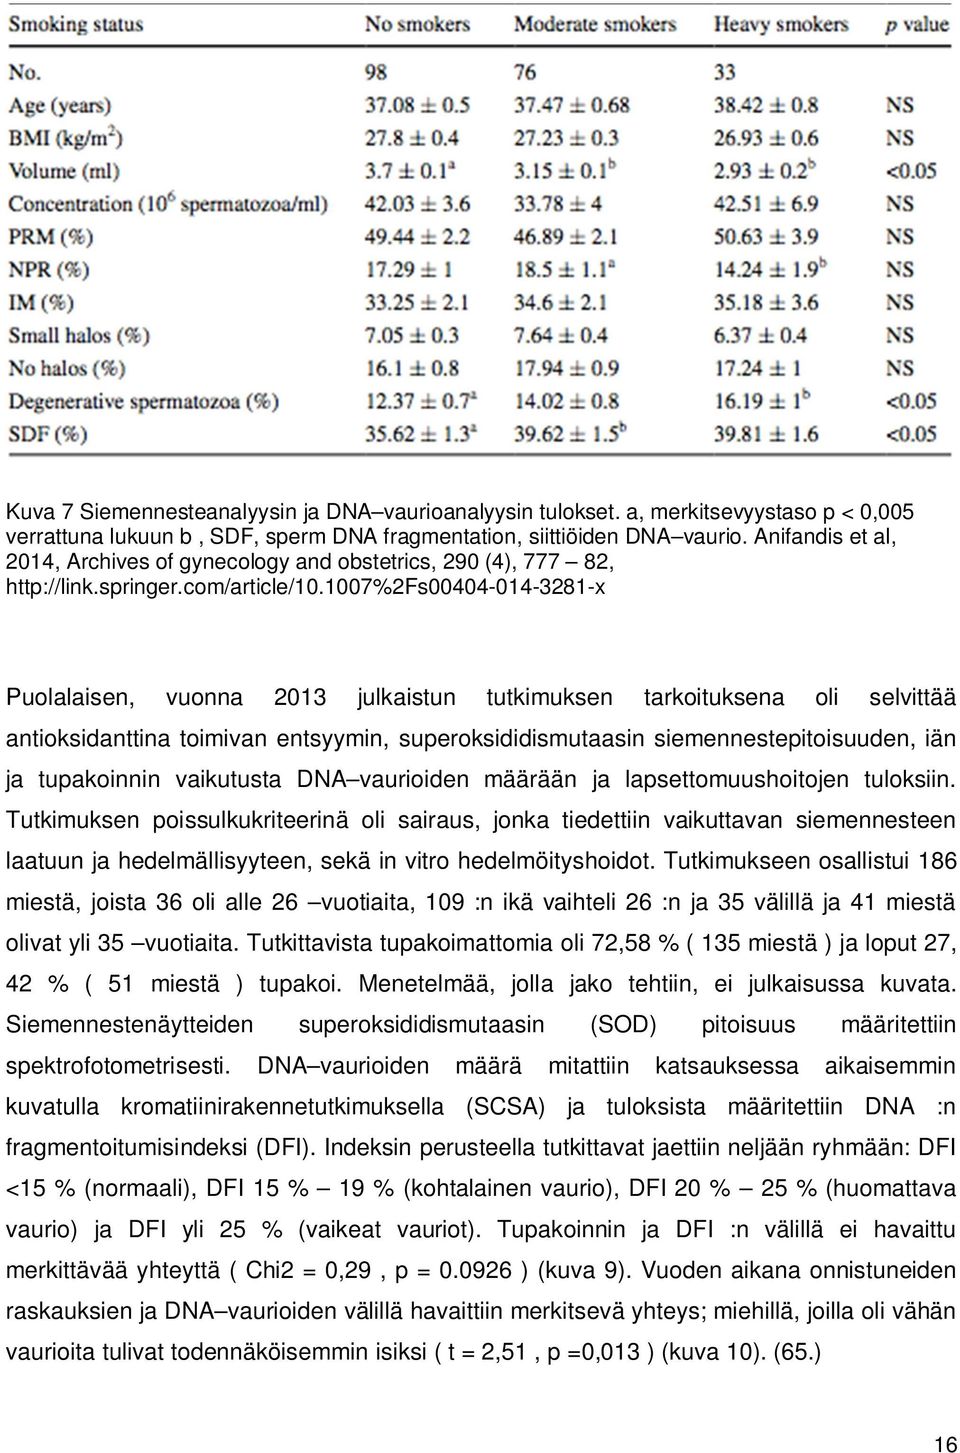 1007%2fs00404-014-3281-x Puolalaisen, vuonna 2013 julkaistun tutkimuksen tarkoituksena oli selvittää antioksidanttina toimivan entsyymin, superoksididismutaasin siemennestepitoisuuden, iän ja